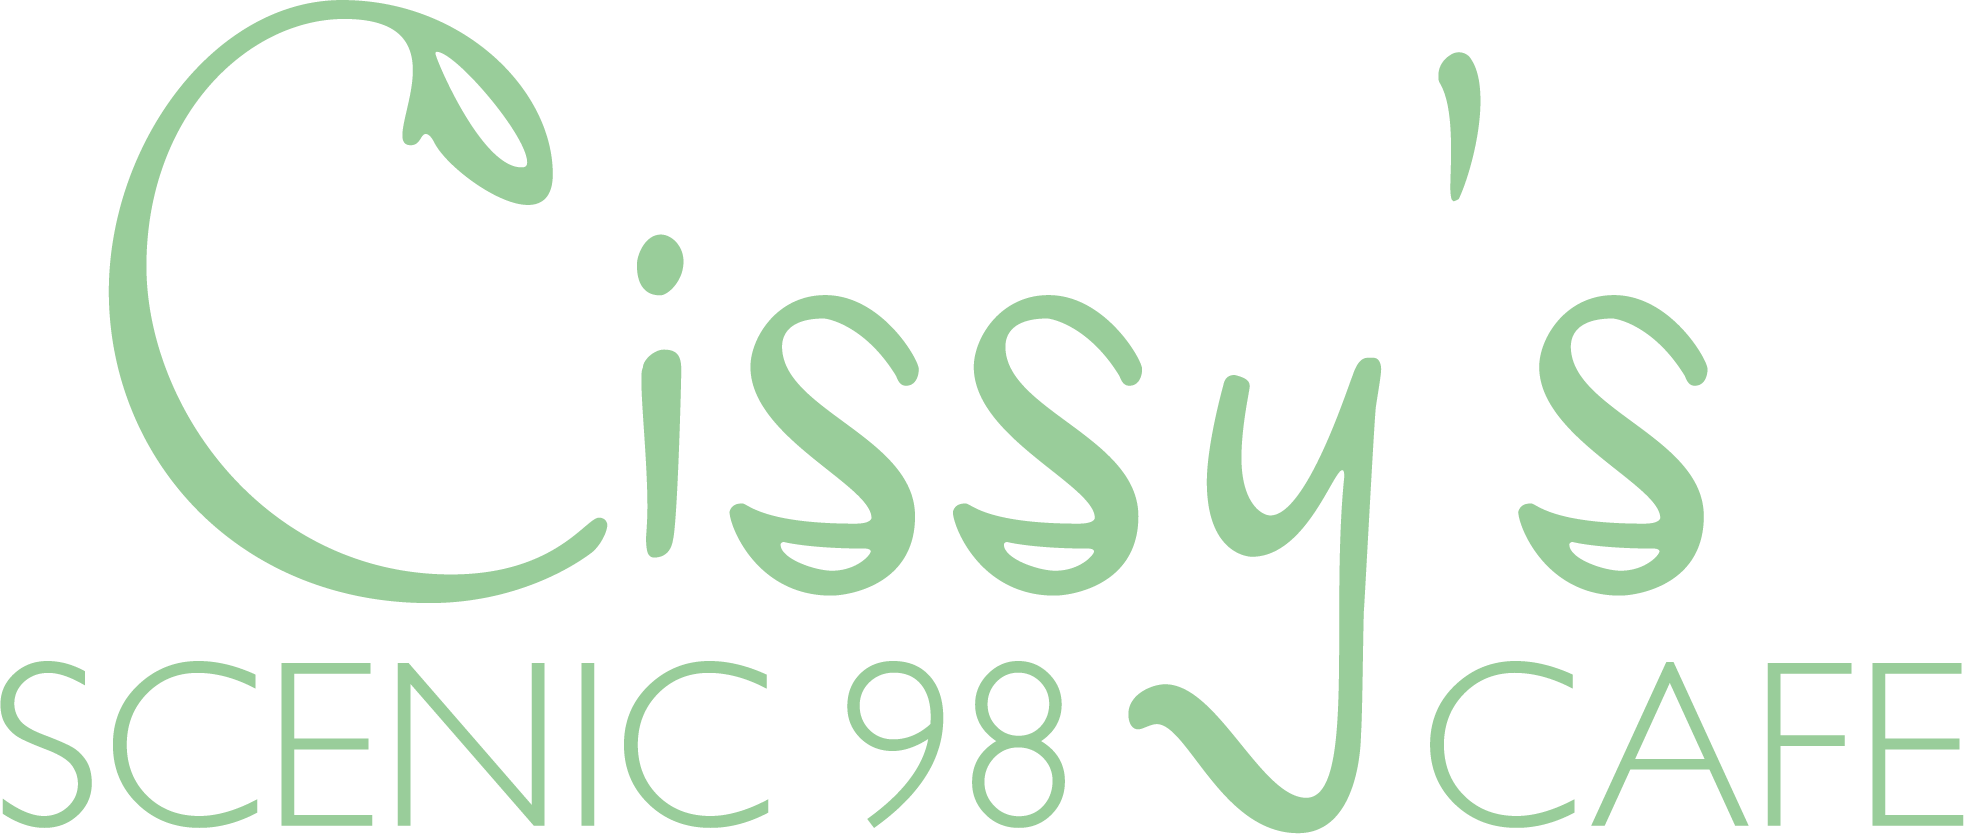 Cissys Cafe Logo